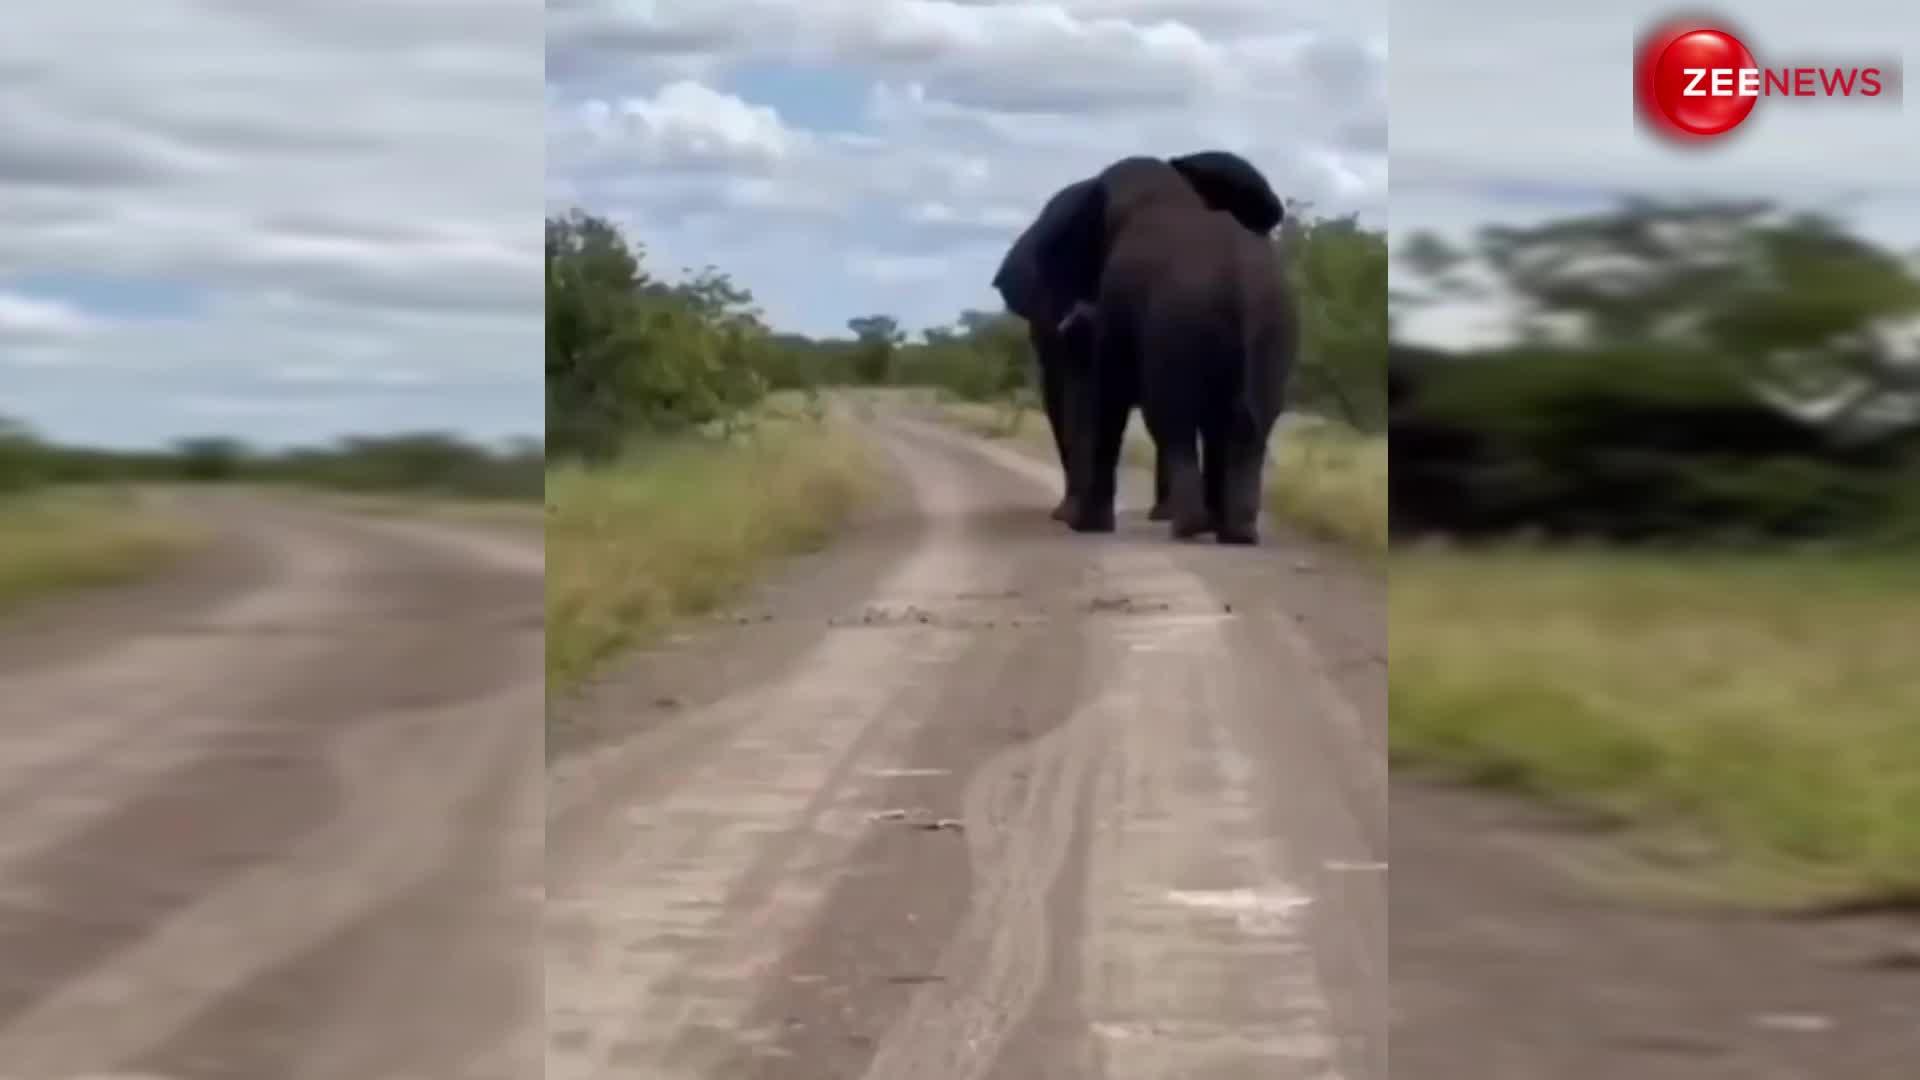 हाथियों की लड़ाई का ऐसा वीडियो आपने पहले कभी नहीं देखा होगा, देखते ही कांप जाएगी आपकी रूह